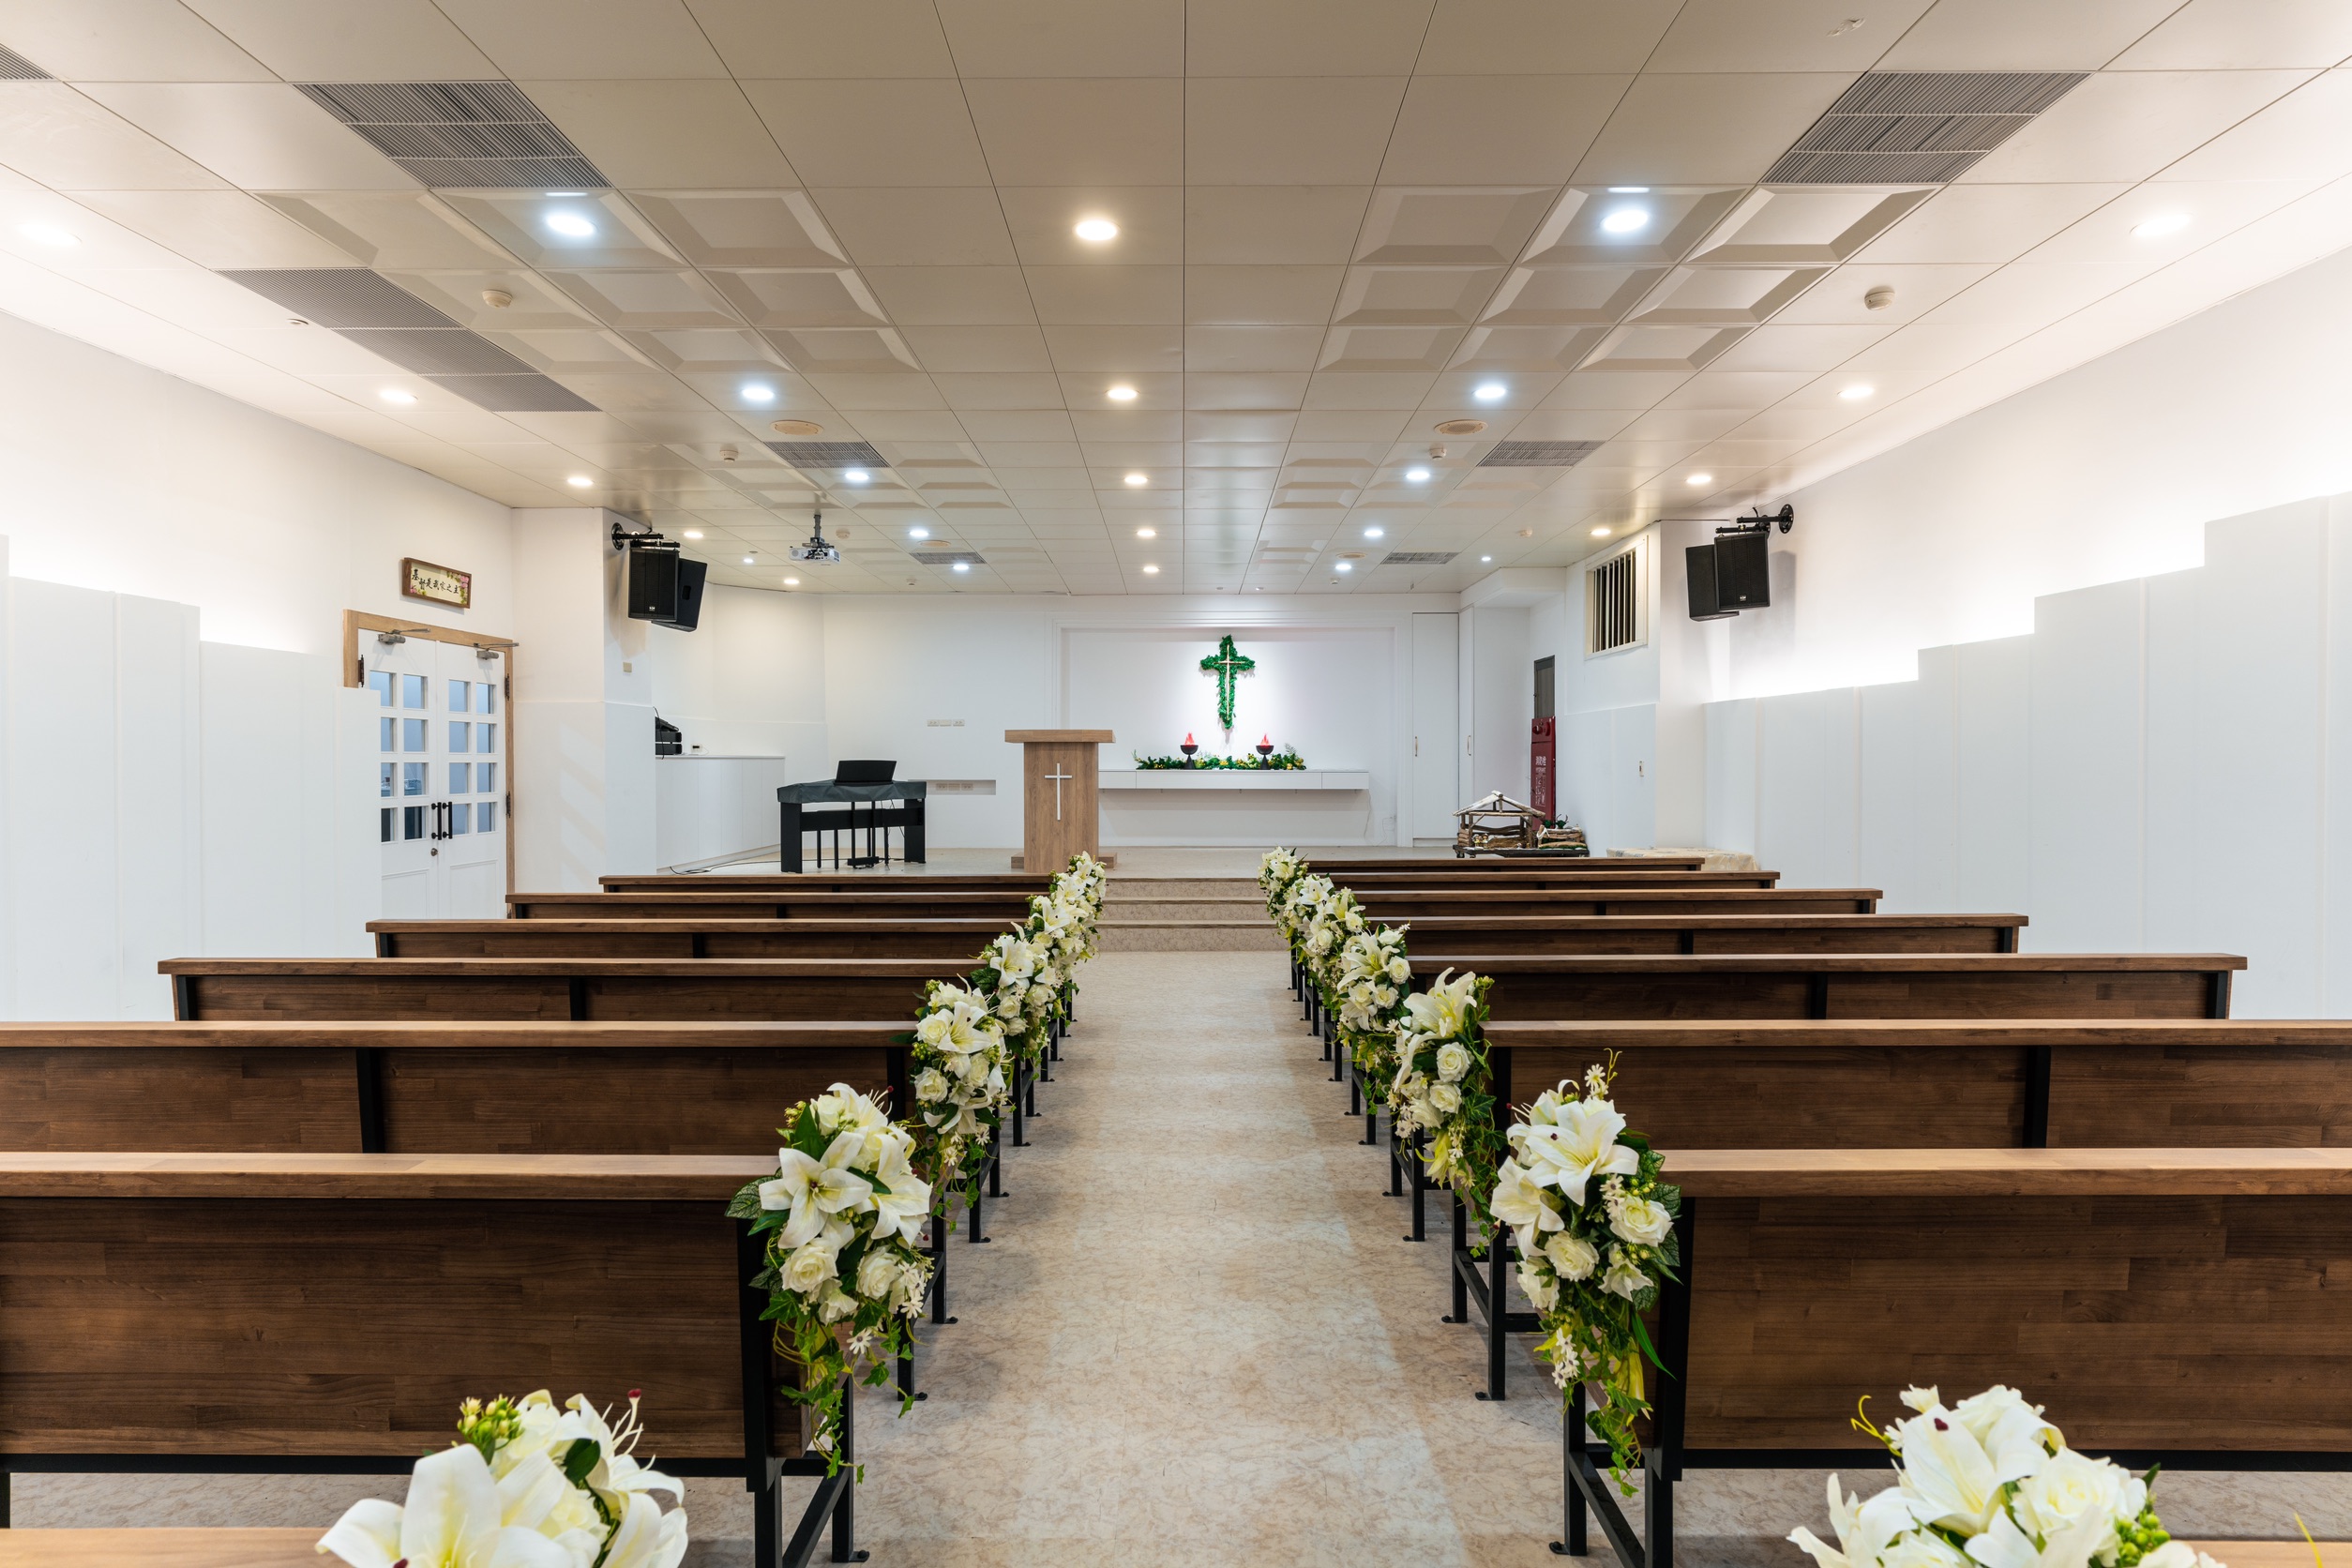 基督專區設置美麗的禮拜堂。(圖/鯉龍山人文紀念館提供)